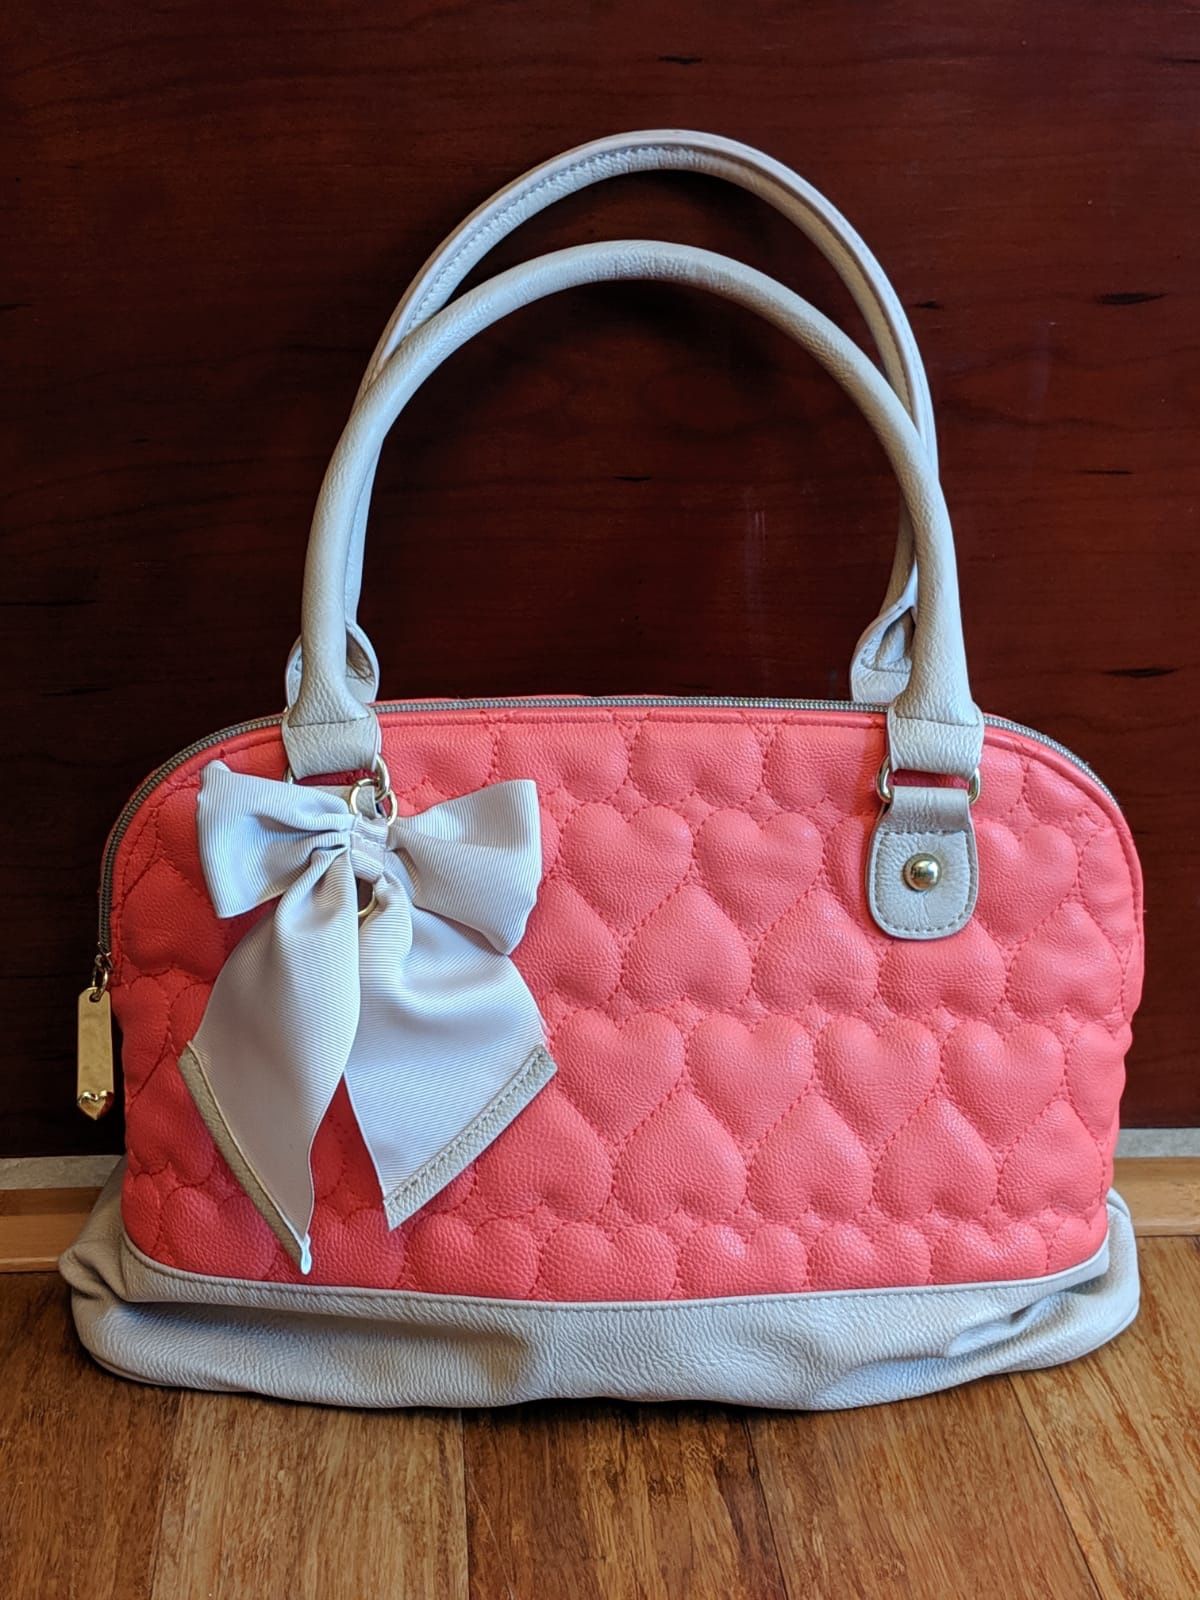 Coral handbag